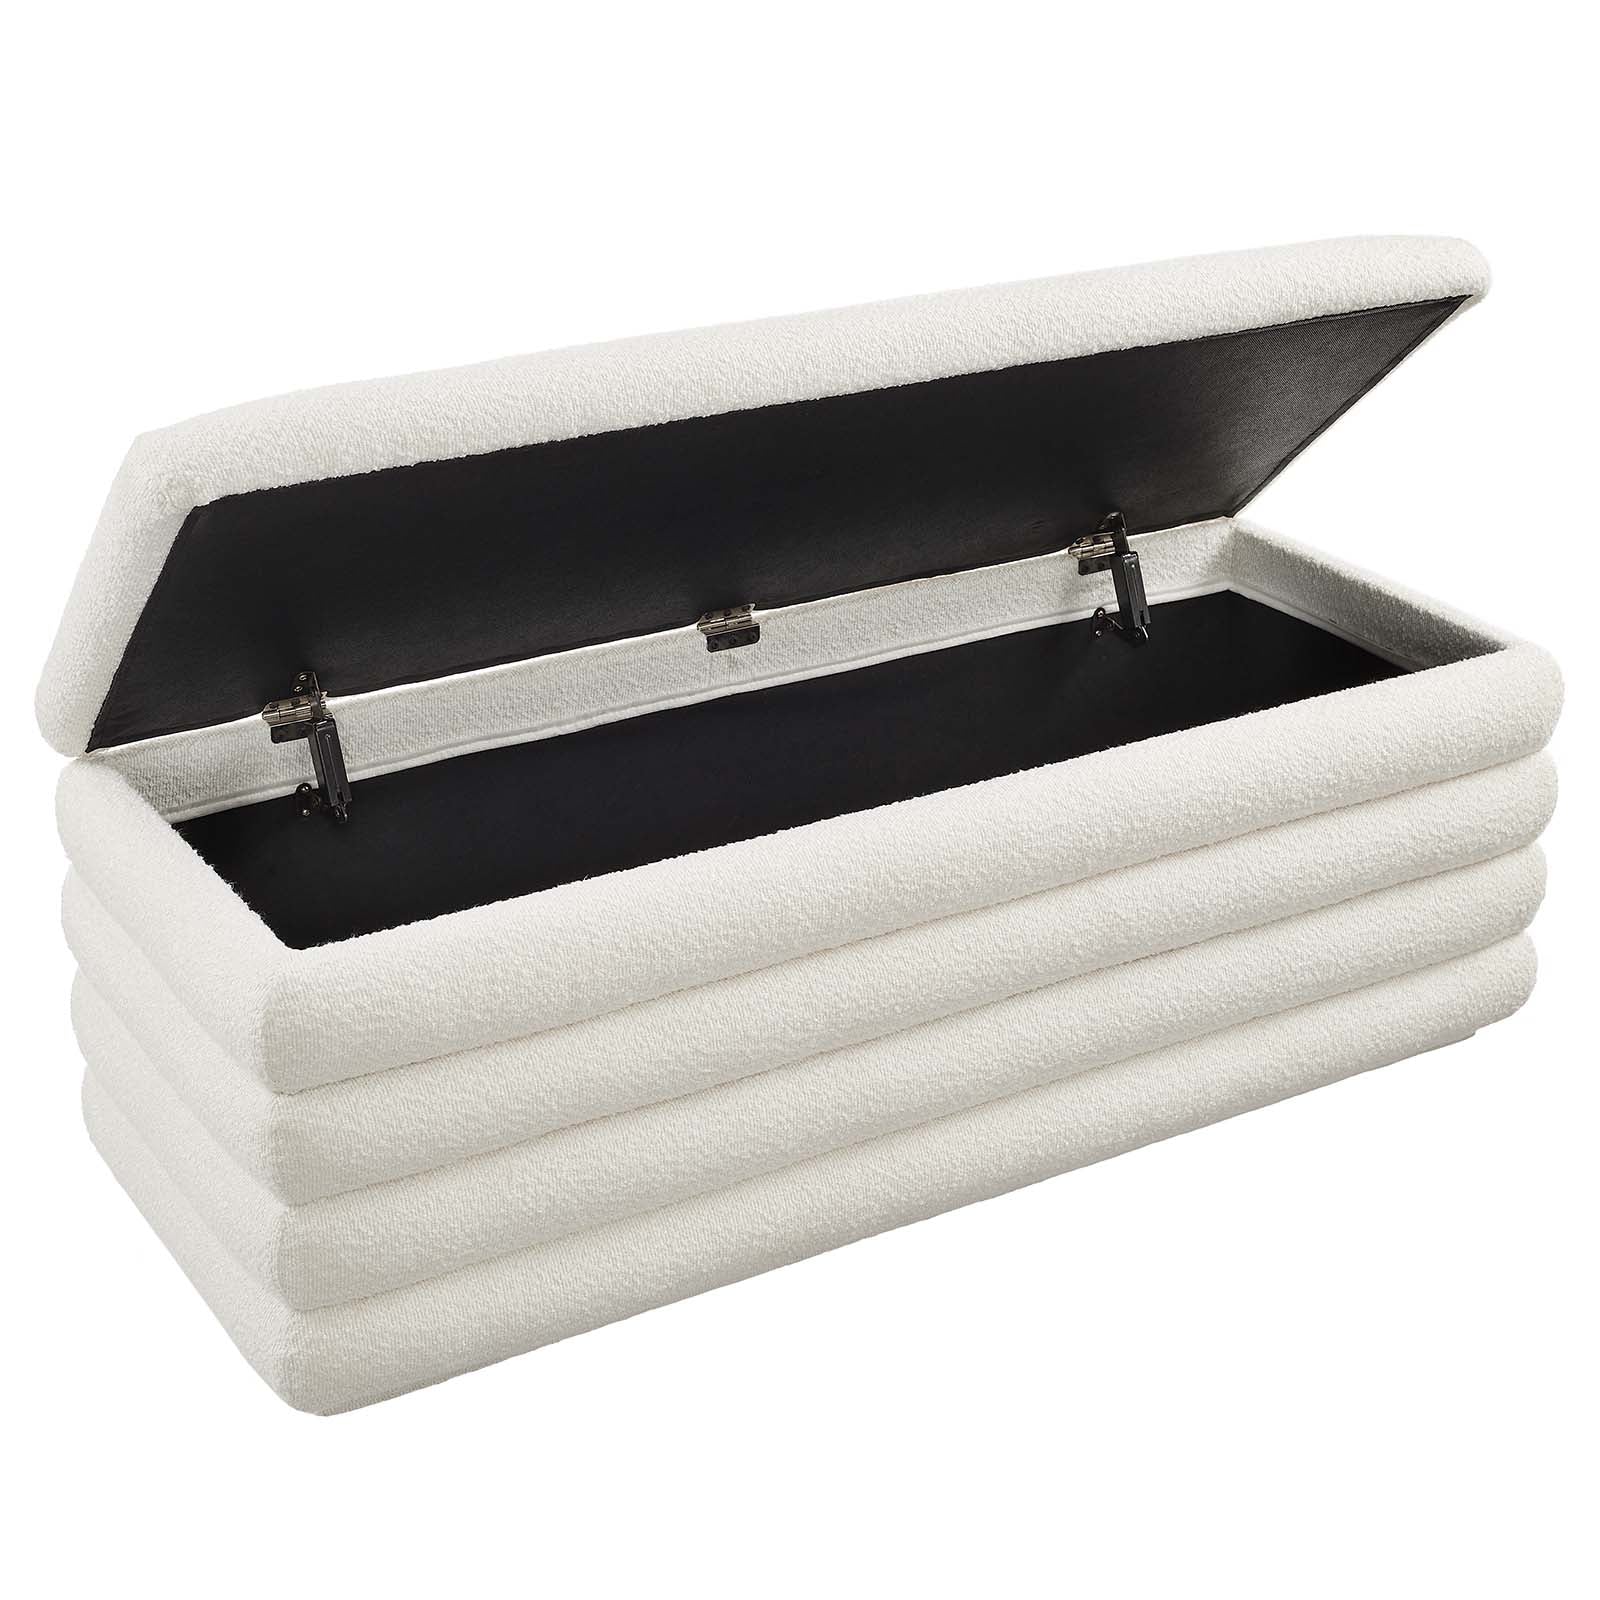 Mezzo Boucle Upholstered Storage Bench - Elite Maison